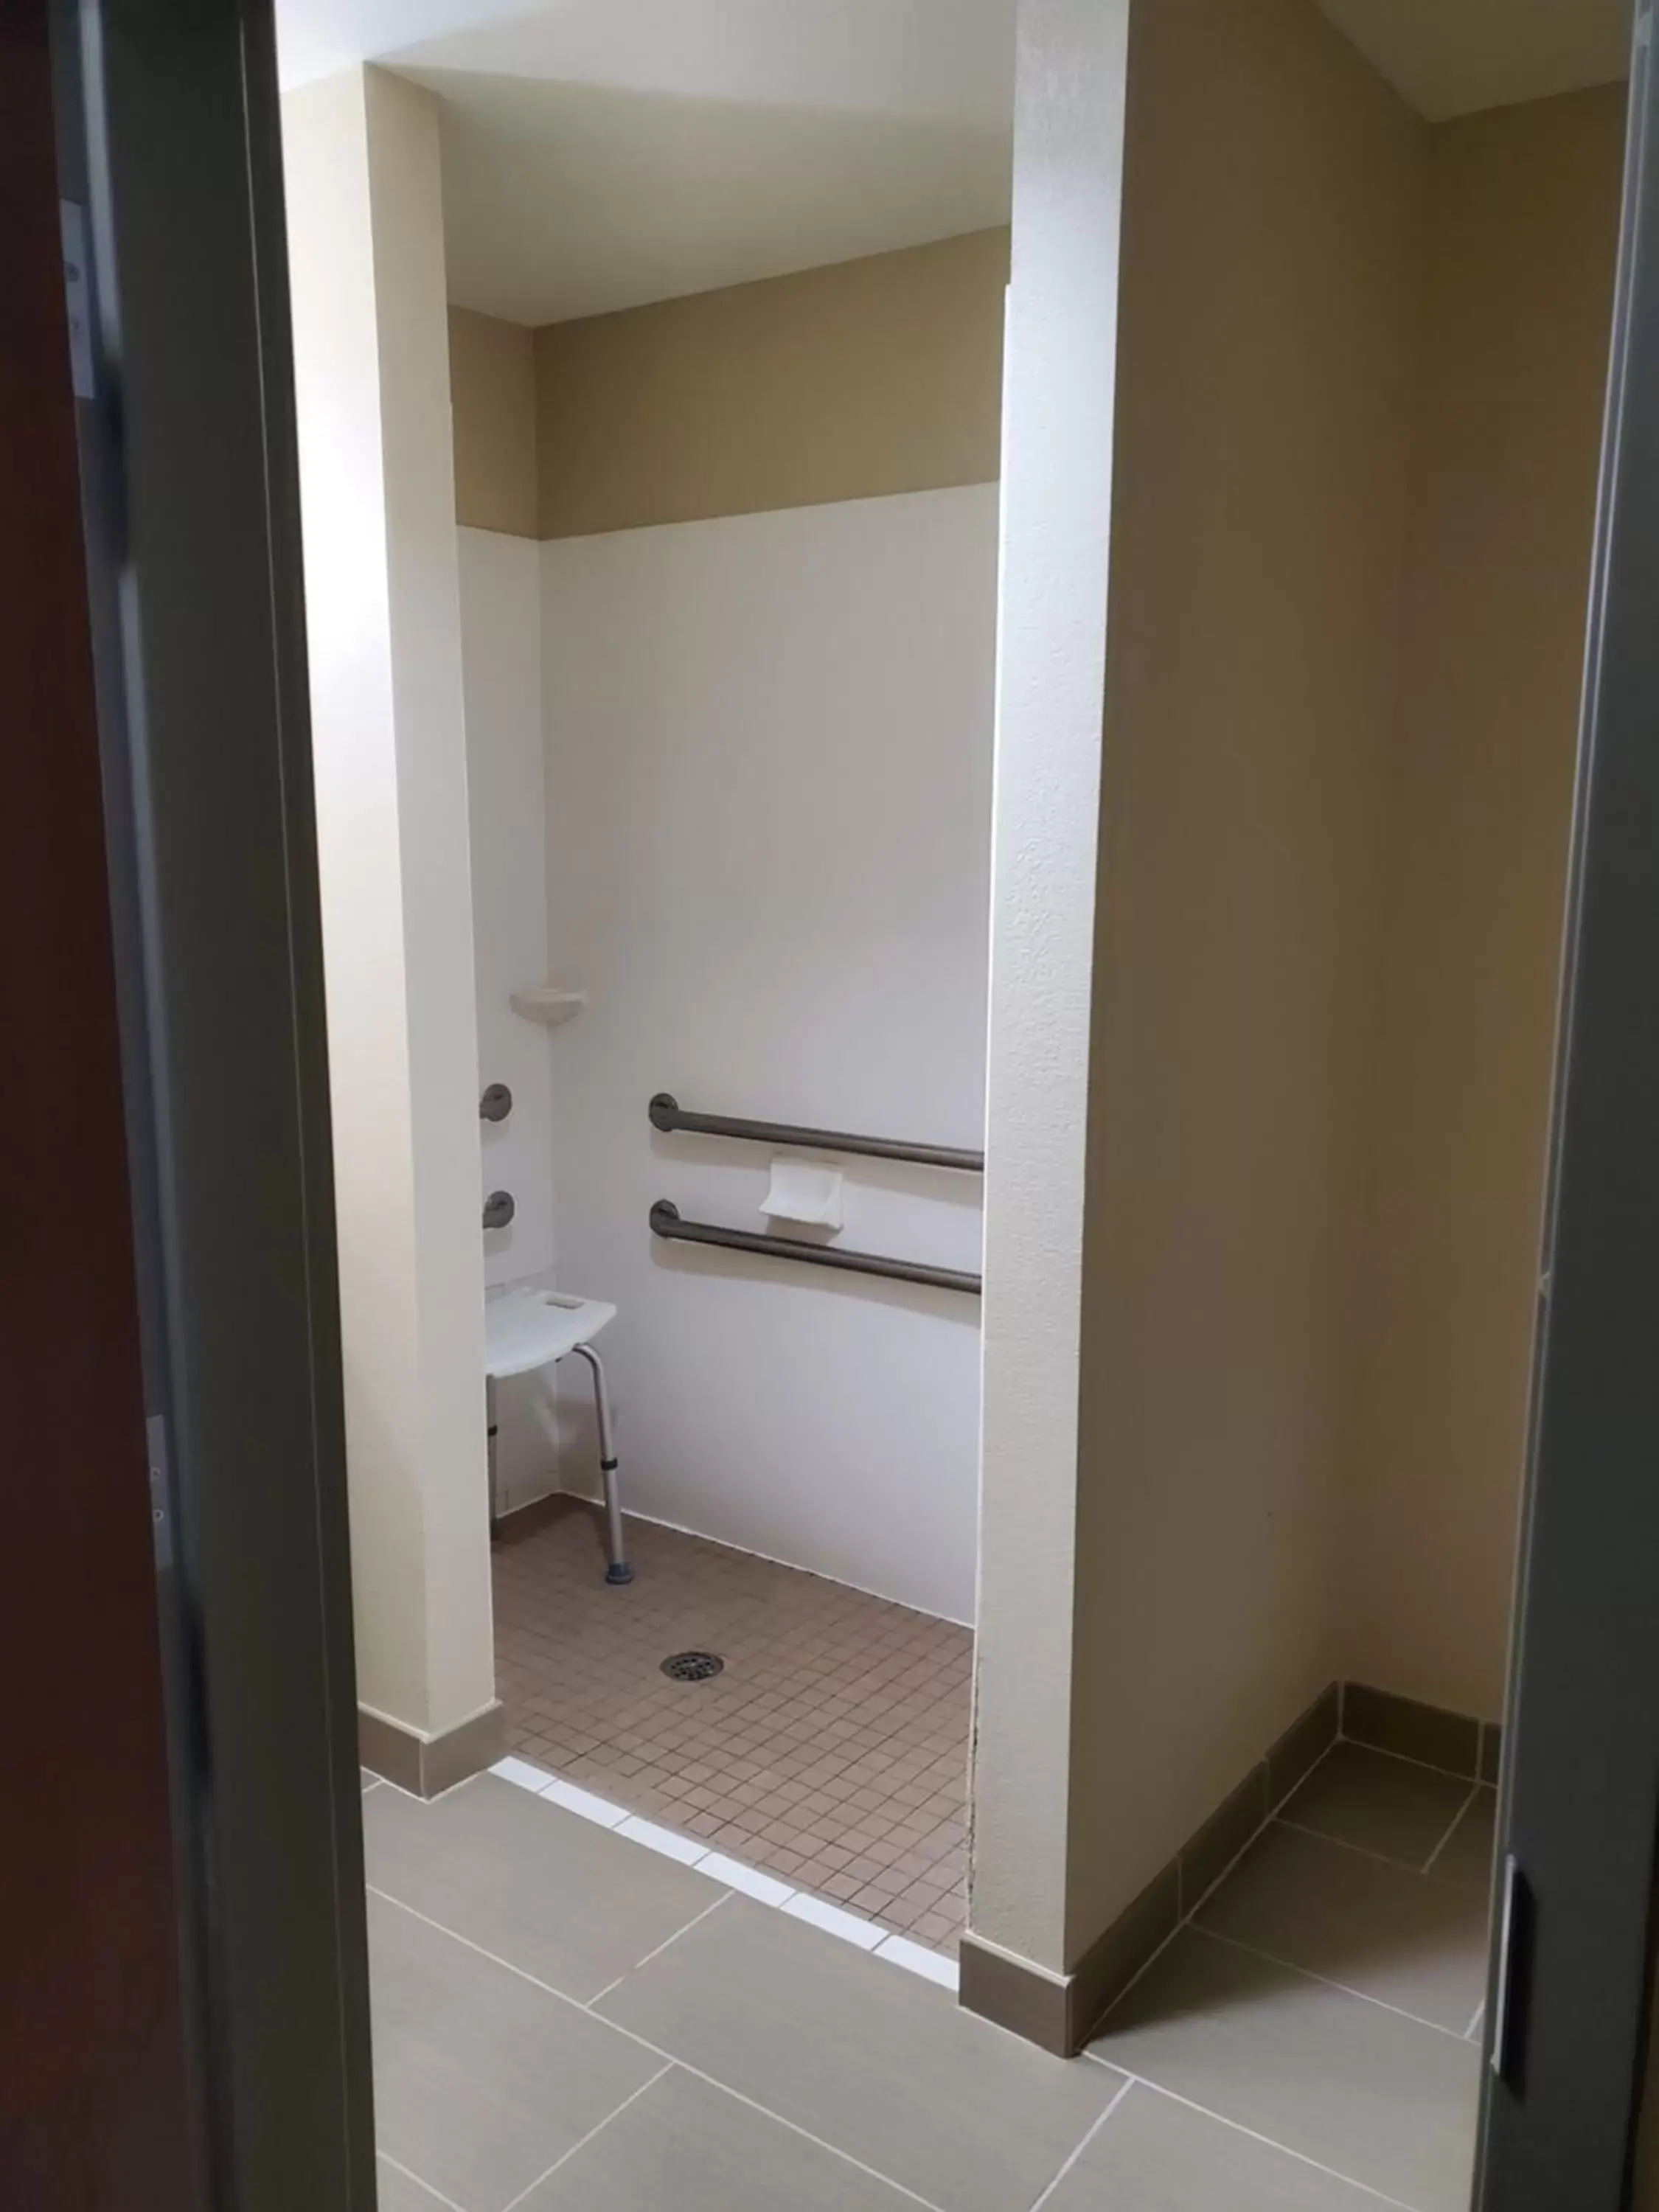 Bathroom in Comfort Suites Little Rock